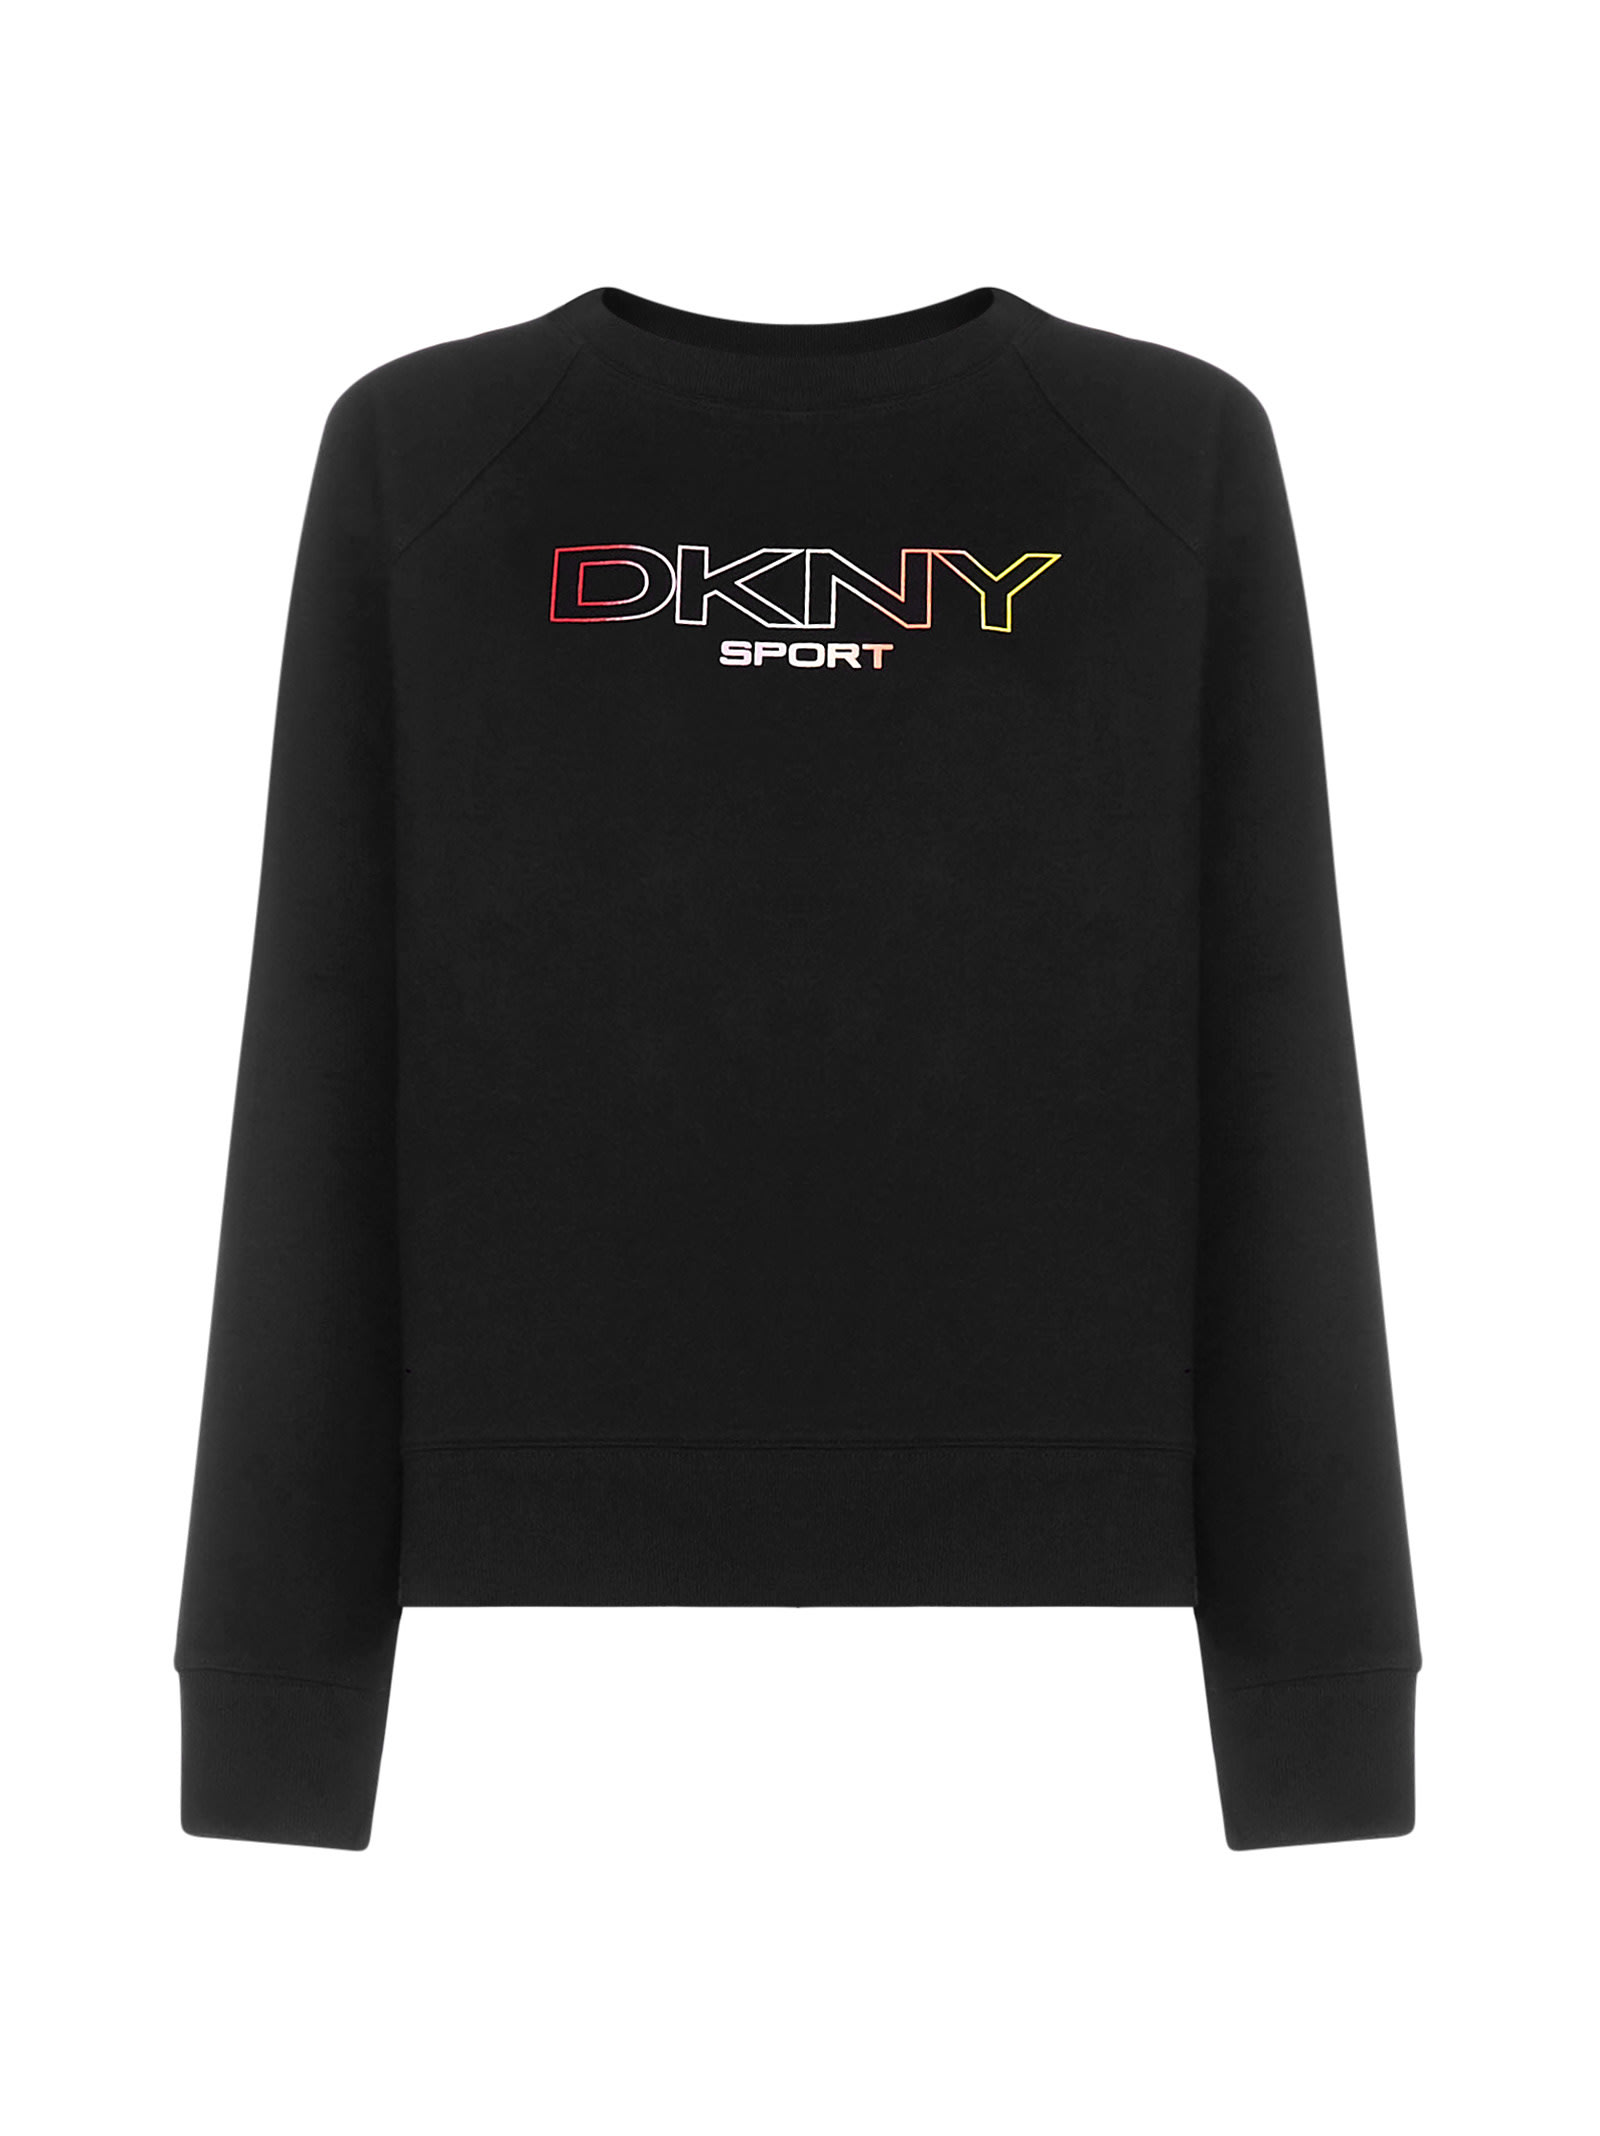 Dkny Sweater In Black